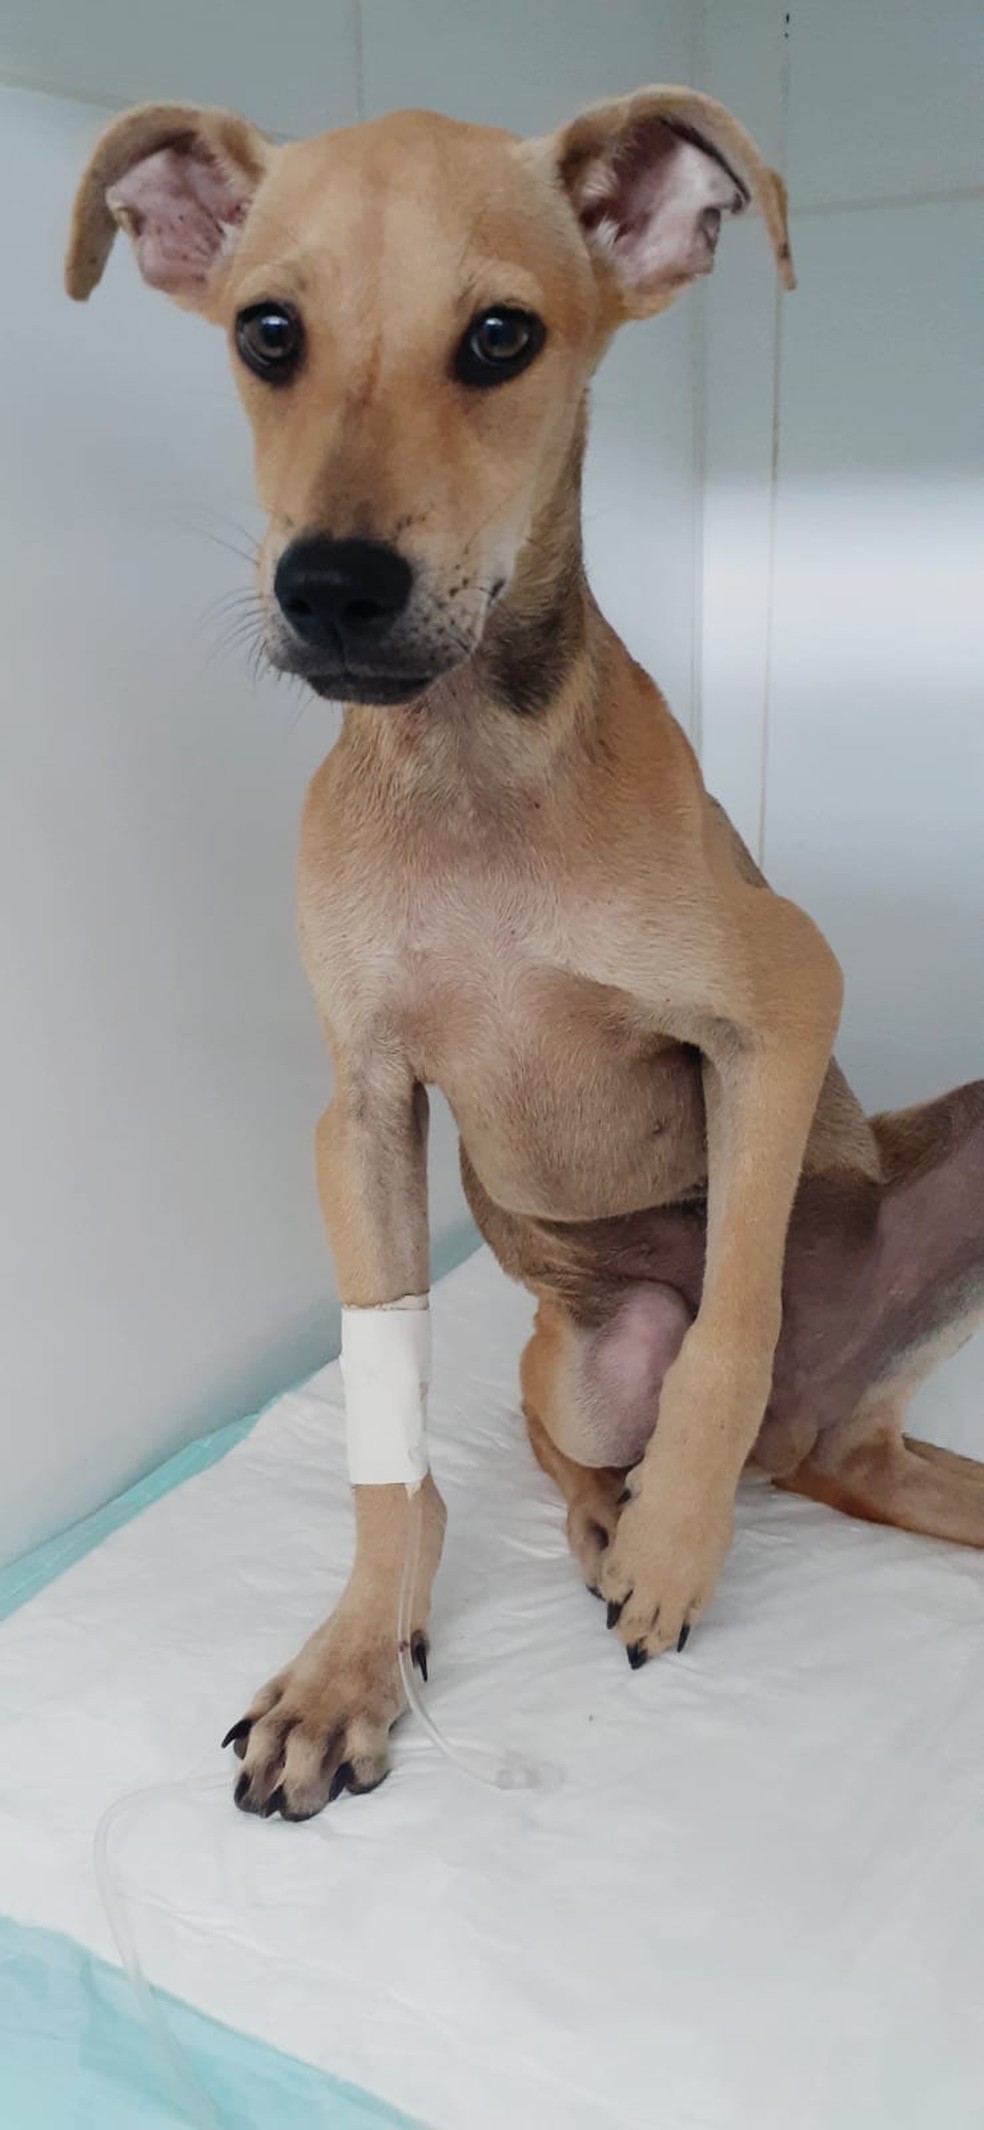 Cachorro que teve convulsão ao espancado rua segue internado passará por reconstrução de osso Rondônia | G1